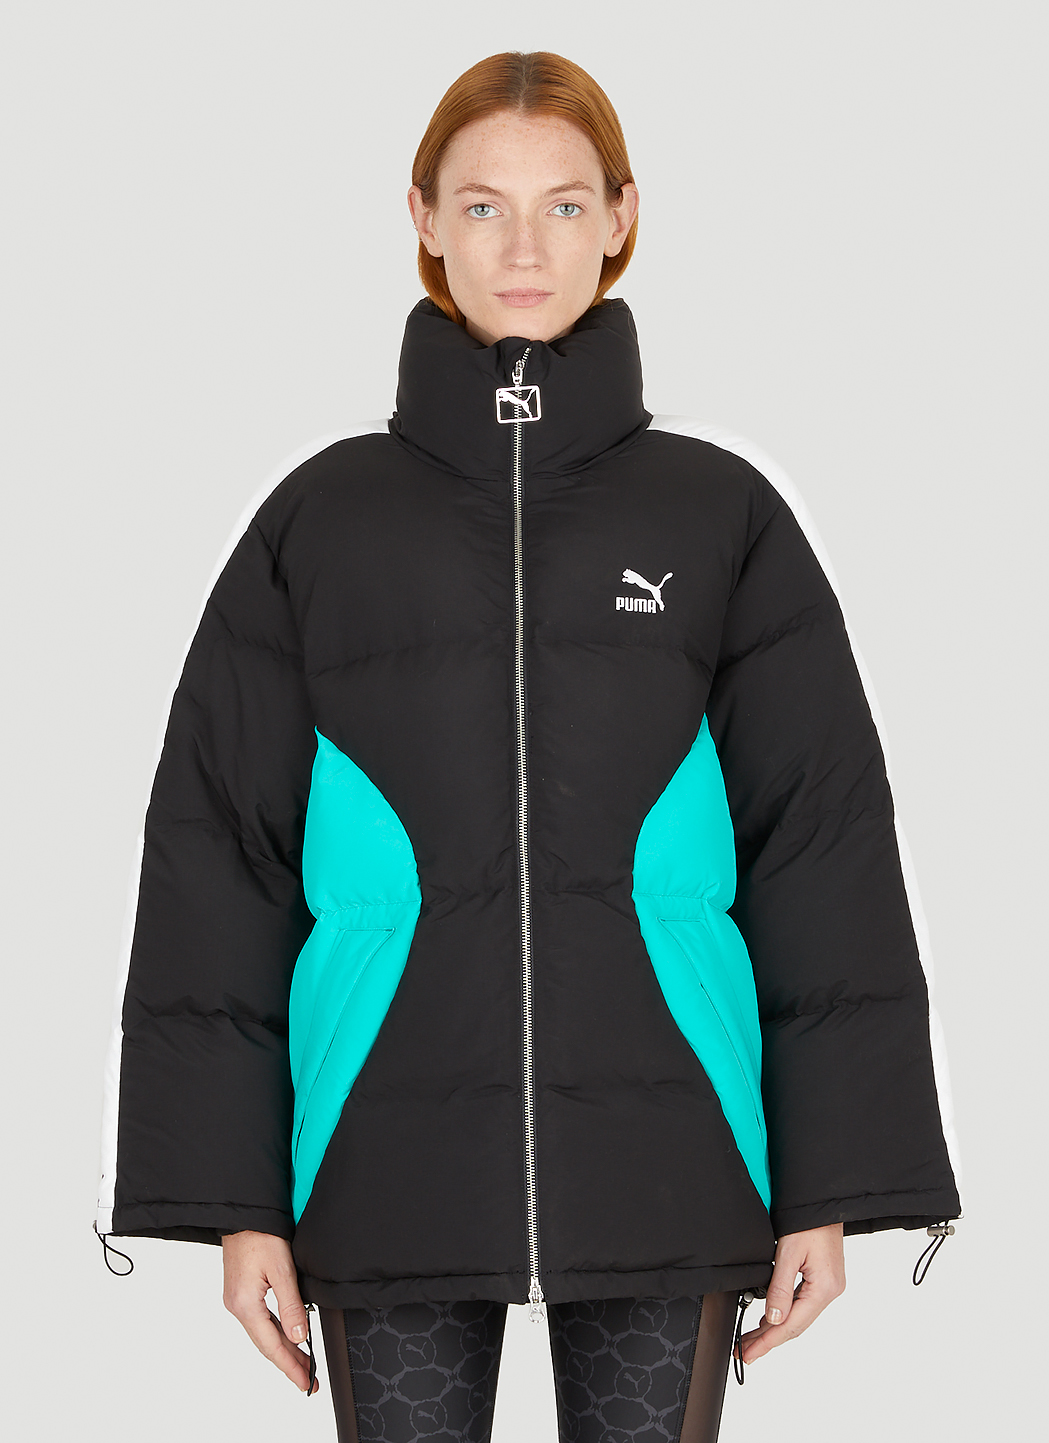 Puma Couture Sport T7 Puffer Jacket in Black | LN-CC®